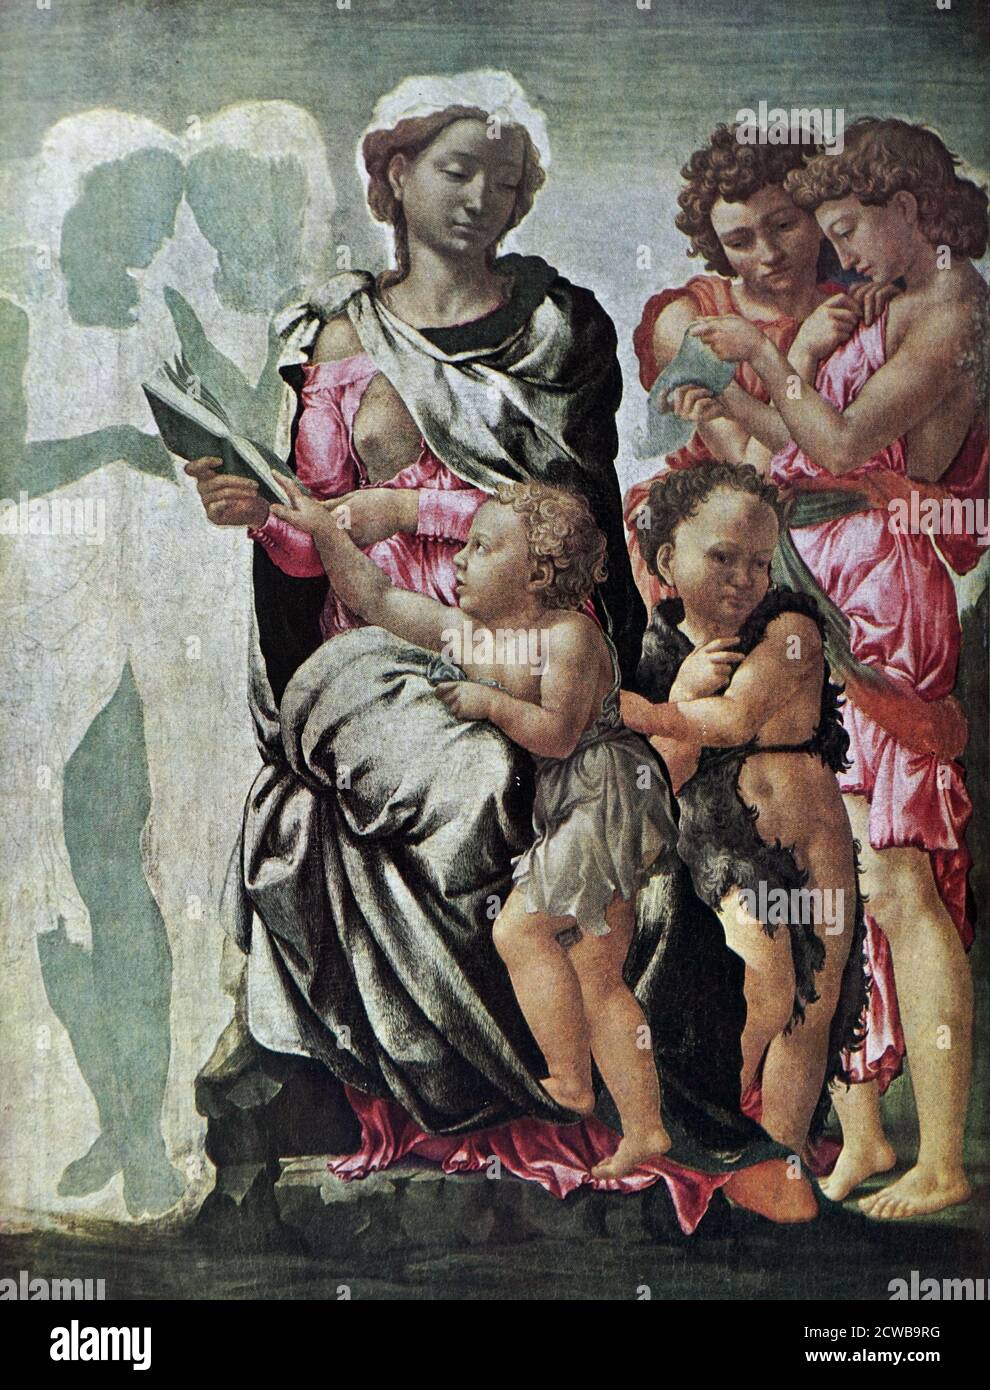 Gemälde mit dem Titel 'Manchester Madonna' von Michelangelo. Michelangelo di Lodovico Buonarroti Simoni (1475-1564) ein italienischer Bildhauer, Maler, Architekt und Dichter der Hochrenaissance. Stockfoto